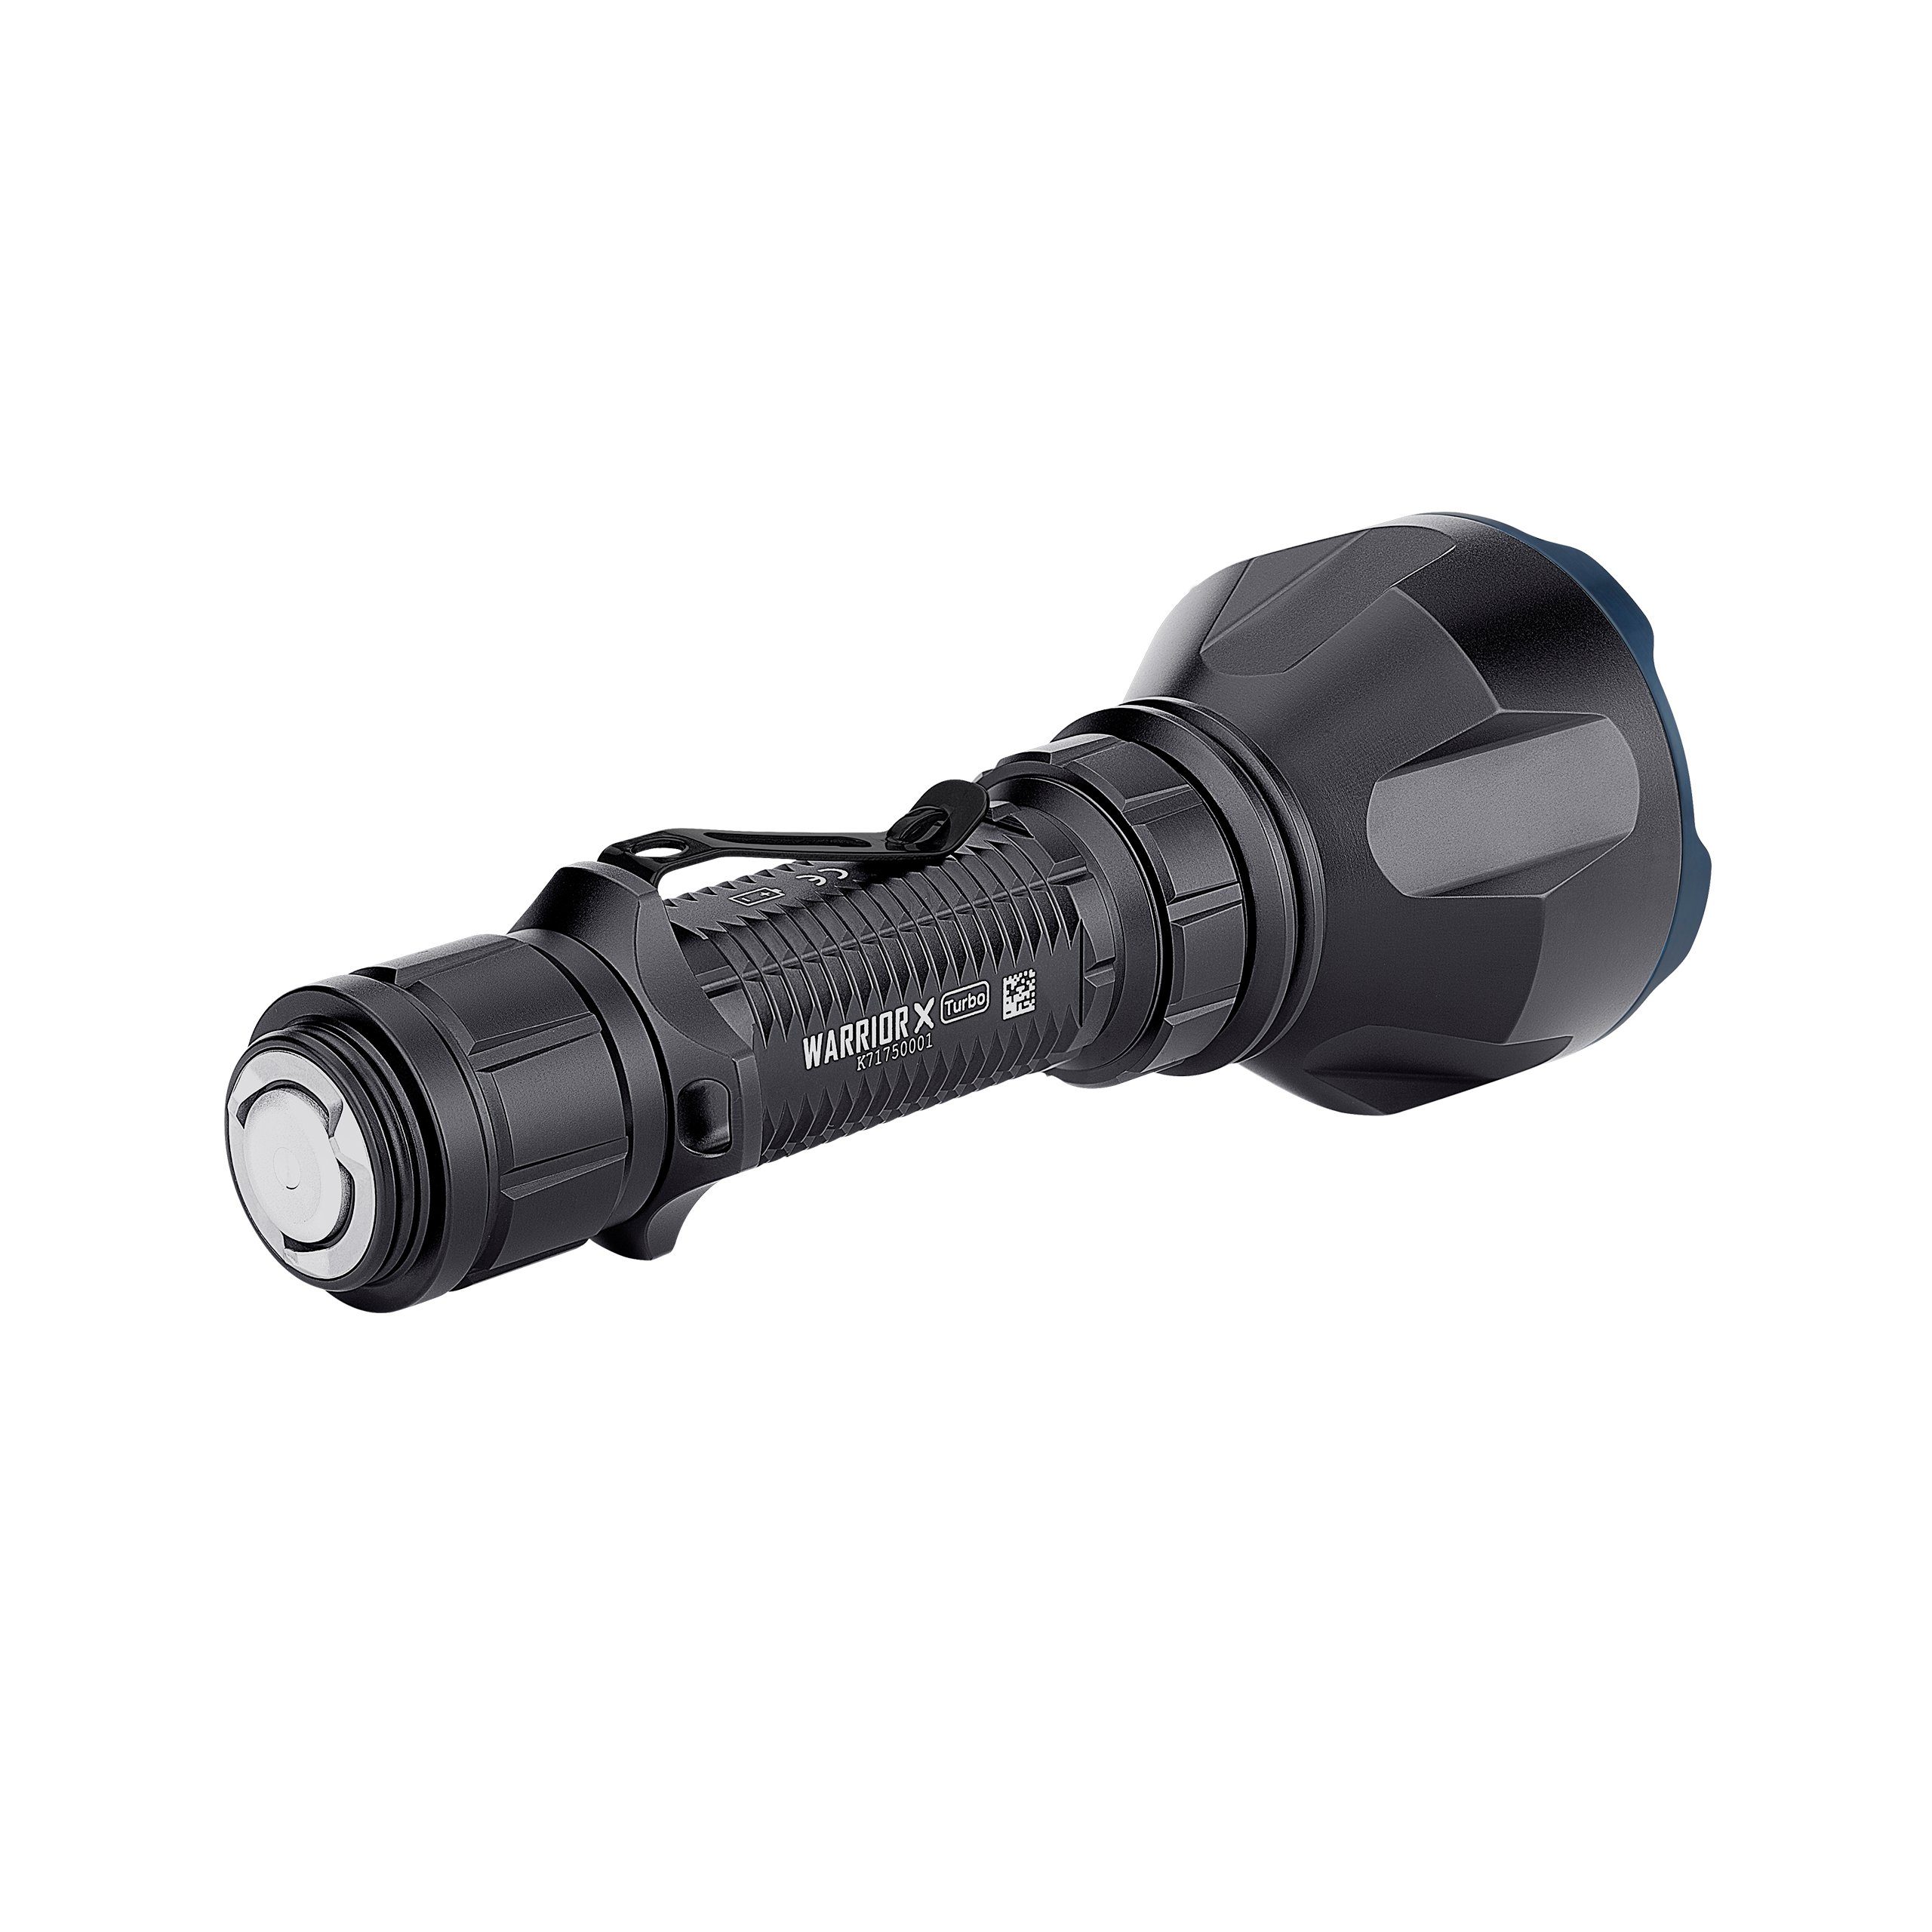 Warrior Lumen Taschenlampe 1100 LED X Turbo OLIGHT Taschenlampe schwarz